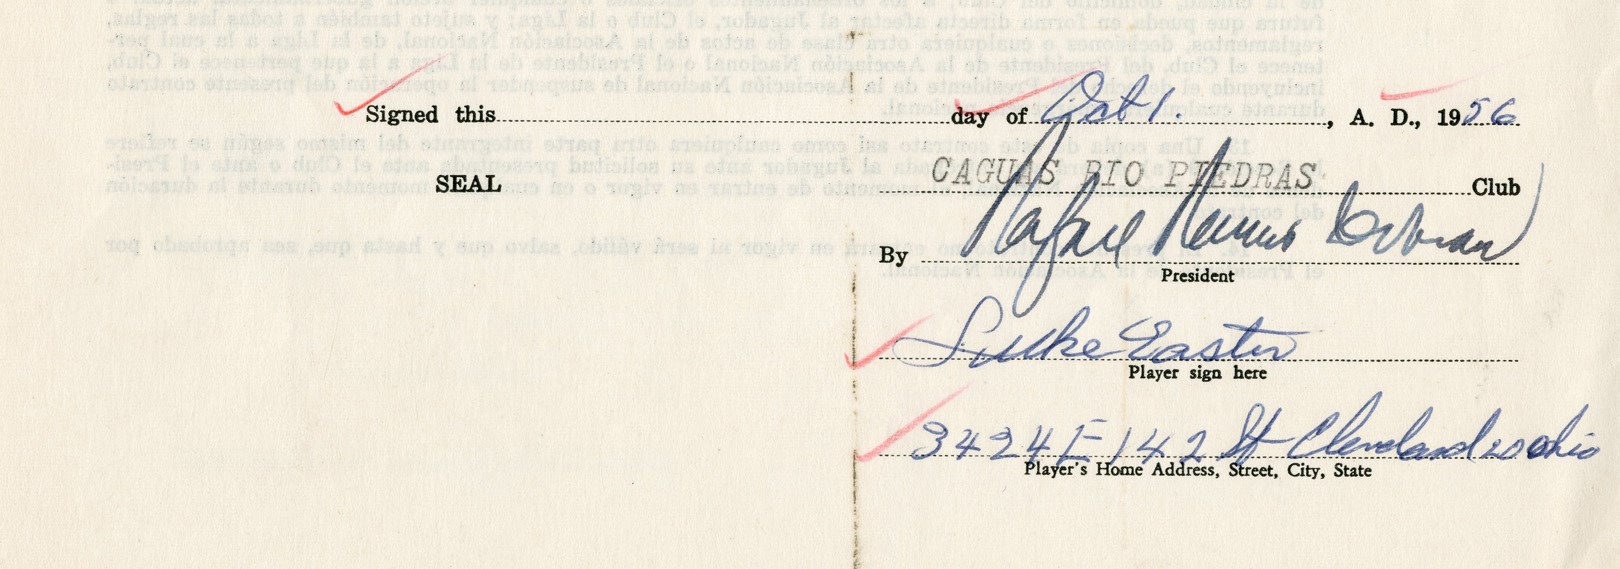 - 1956-57 Luke Easter Signed Baseball Contract & Signed Letter